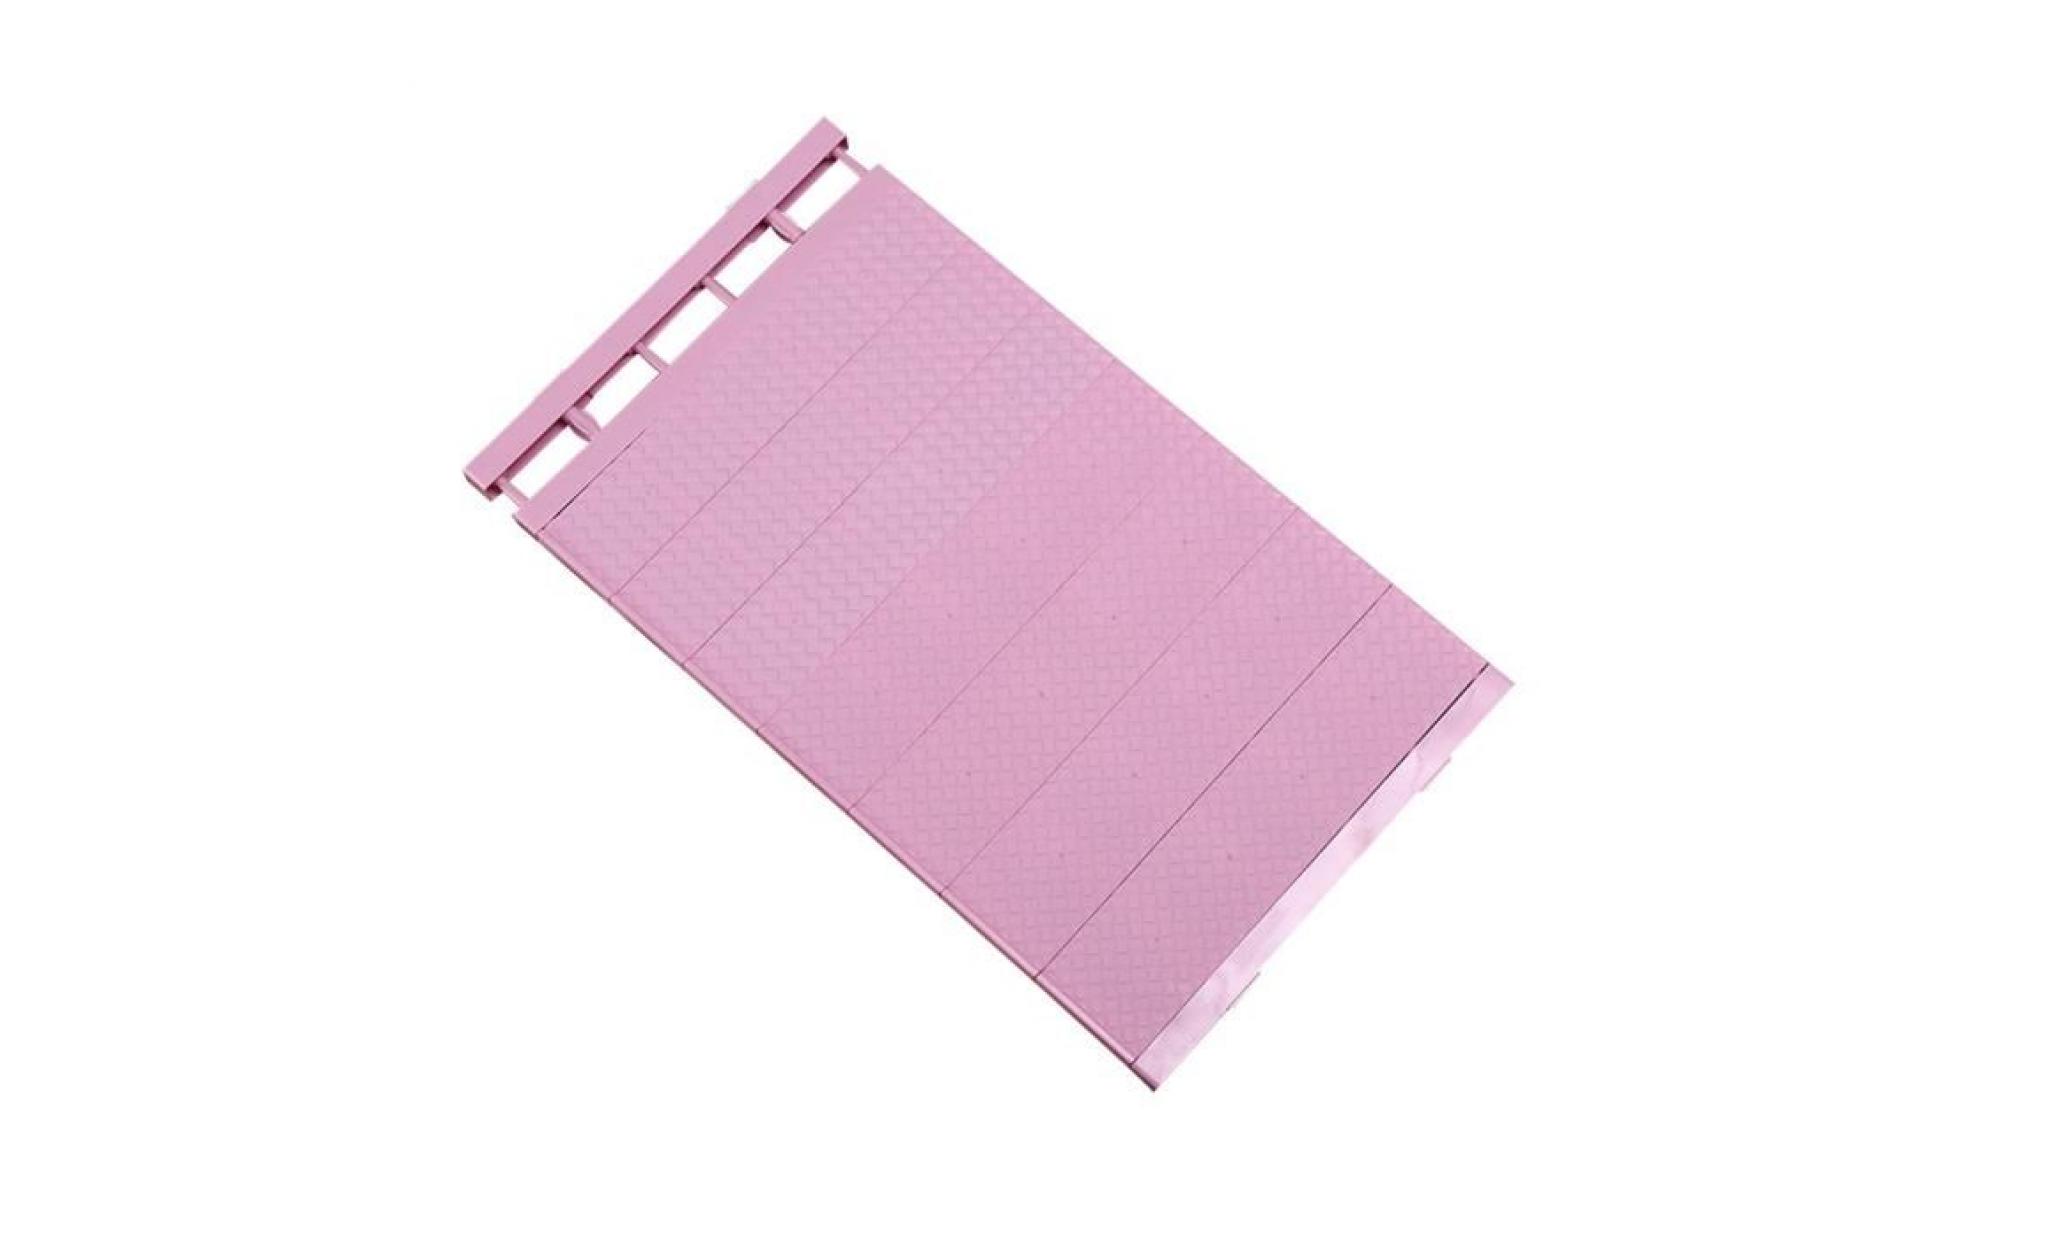 cloison de séparation armoire placard de déflecteur étagère dortoir partition partition, , plage d'étirement: rose clair 30 40cm